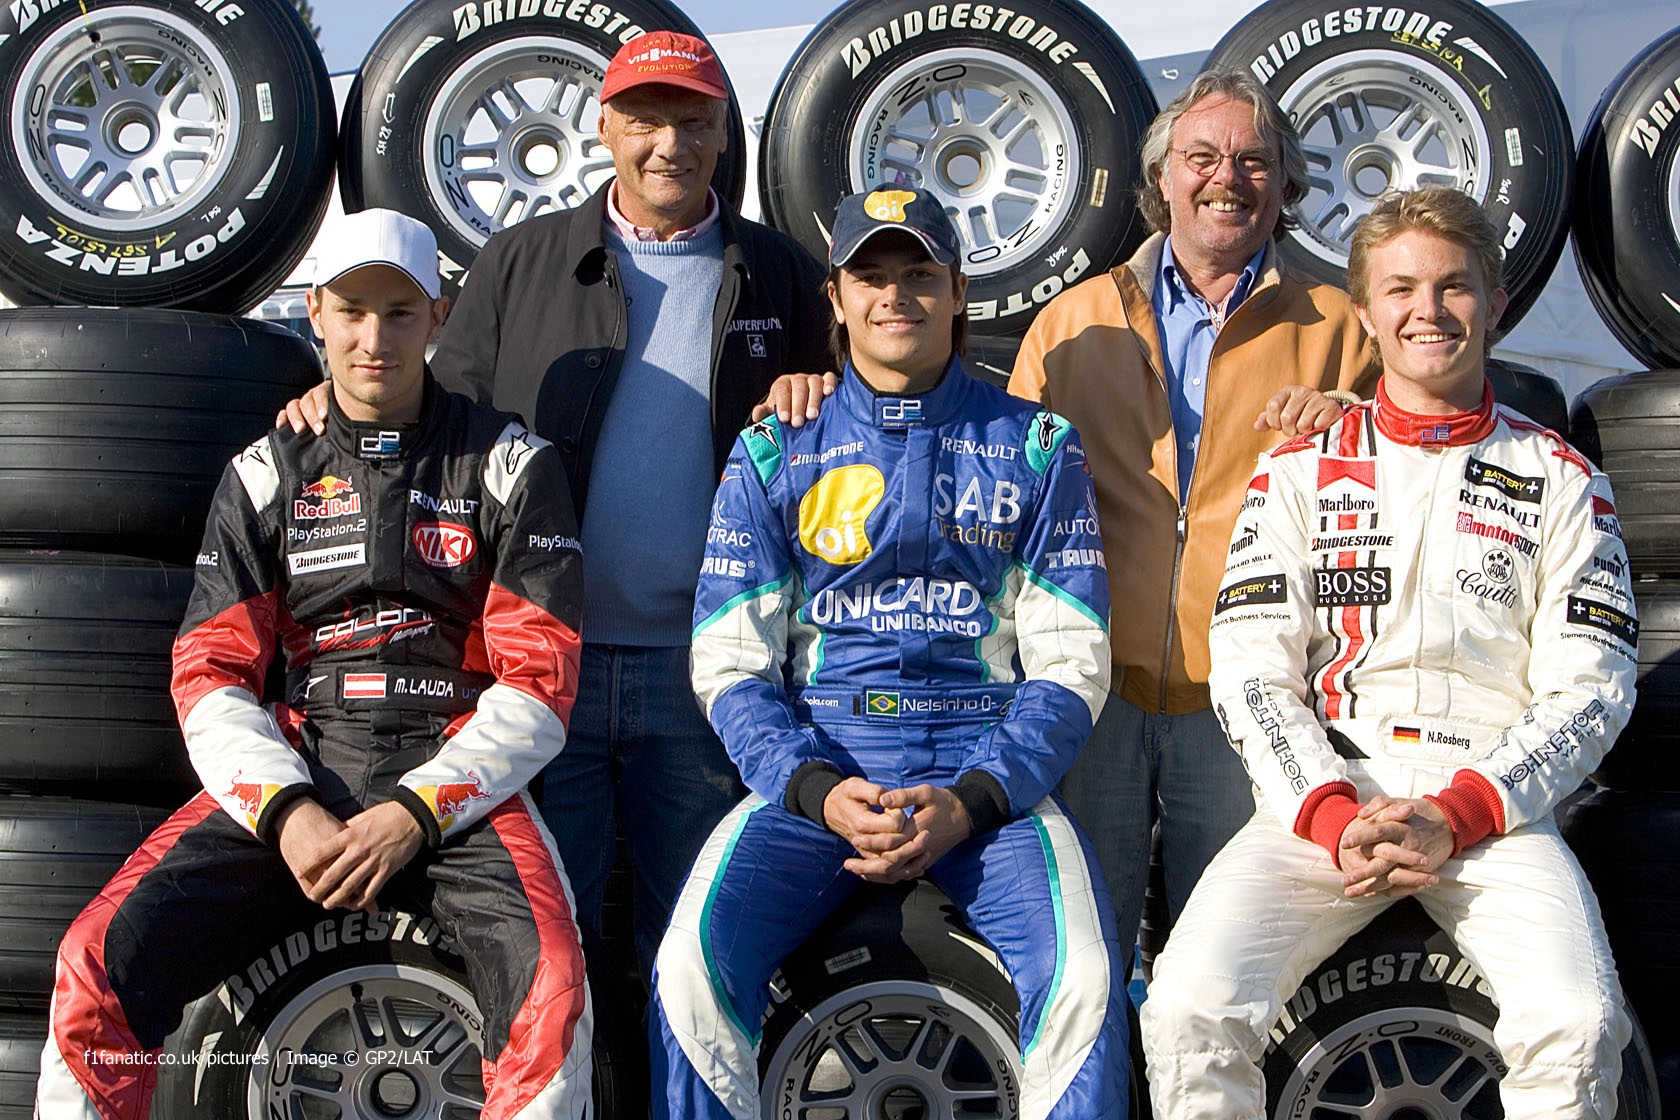 Jovens pilotos e veteranos. Atrás, Niki Lauda e Keke Rosberg. À frente, Mathias Lauda, Nelsinho Piquet e Nico Rosberg, em 2005, durante fim de semana da GP2. Foto: Divulgação